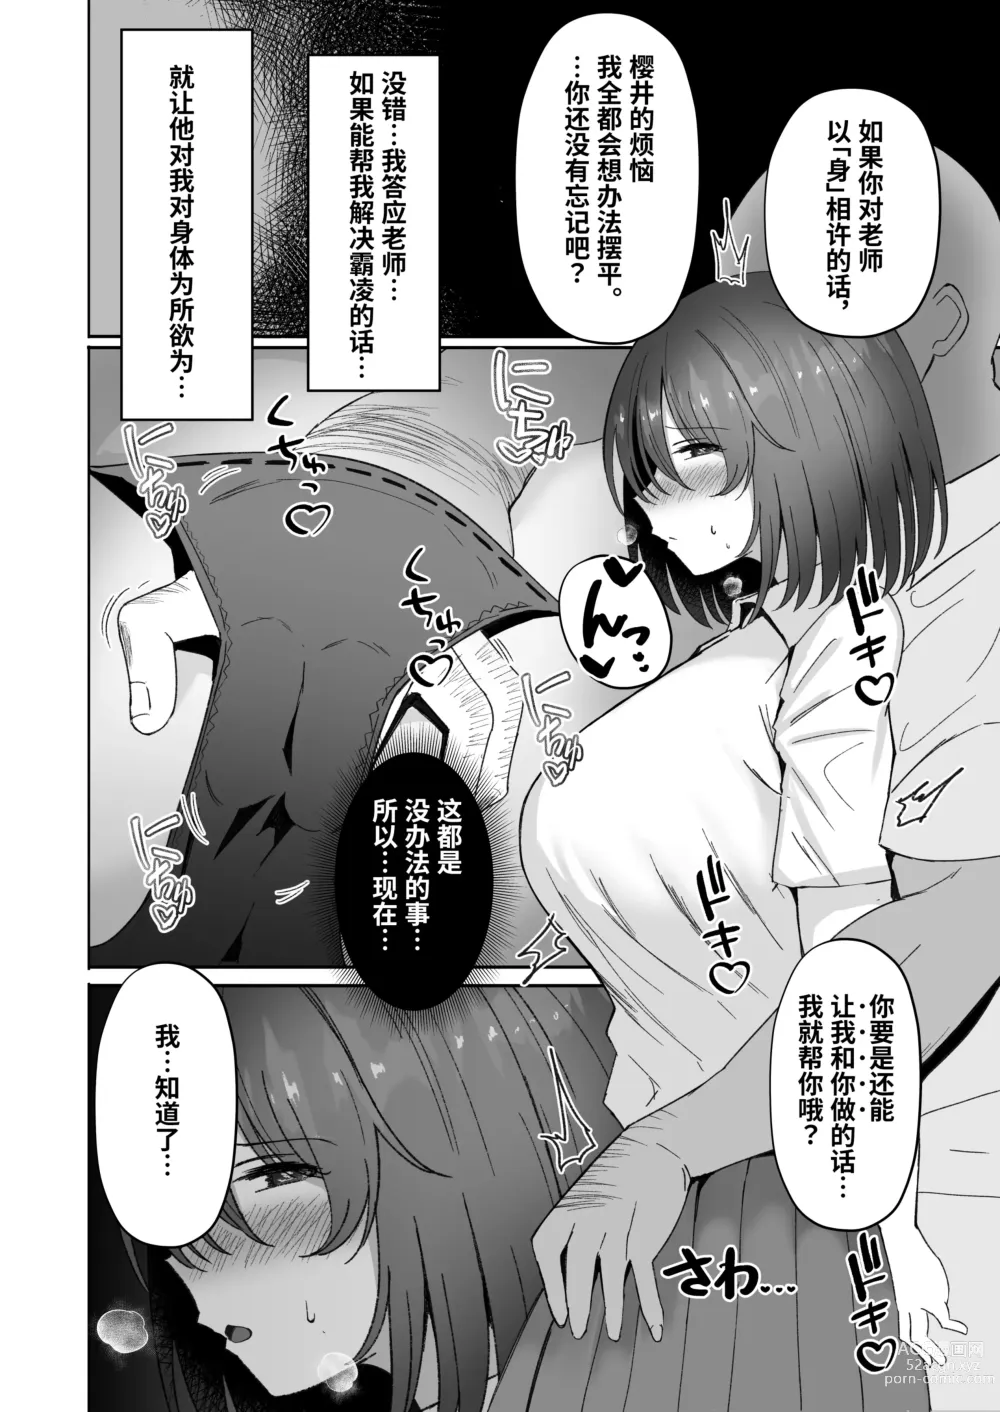 Page 9 of doujinshi Netorare ~Kurokami Musume no Junan~